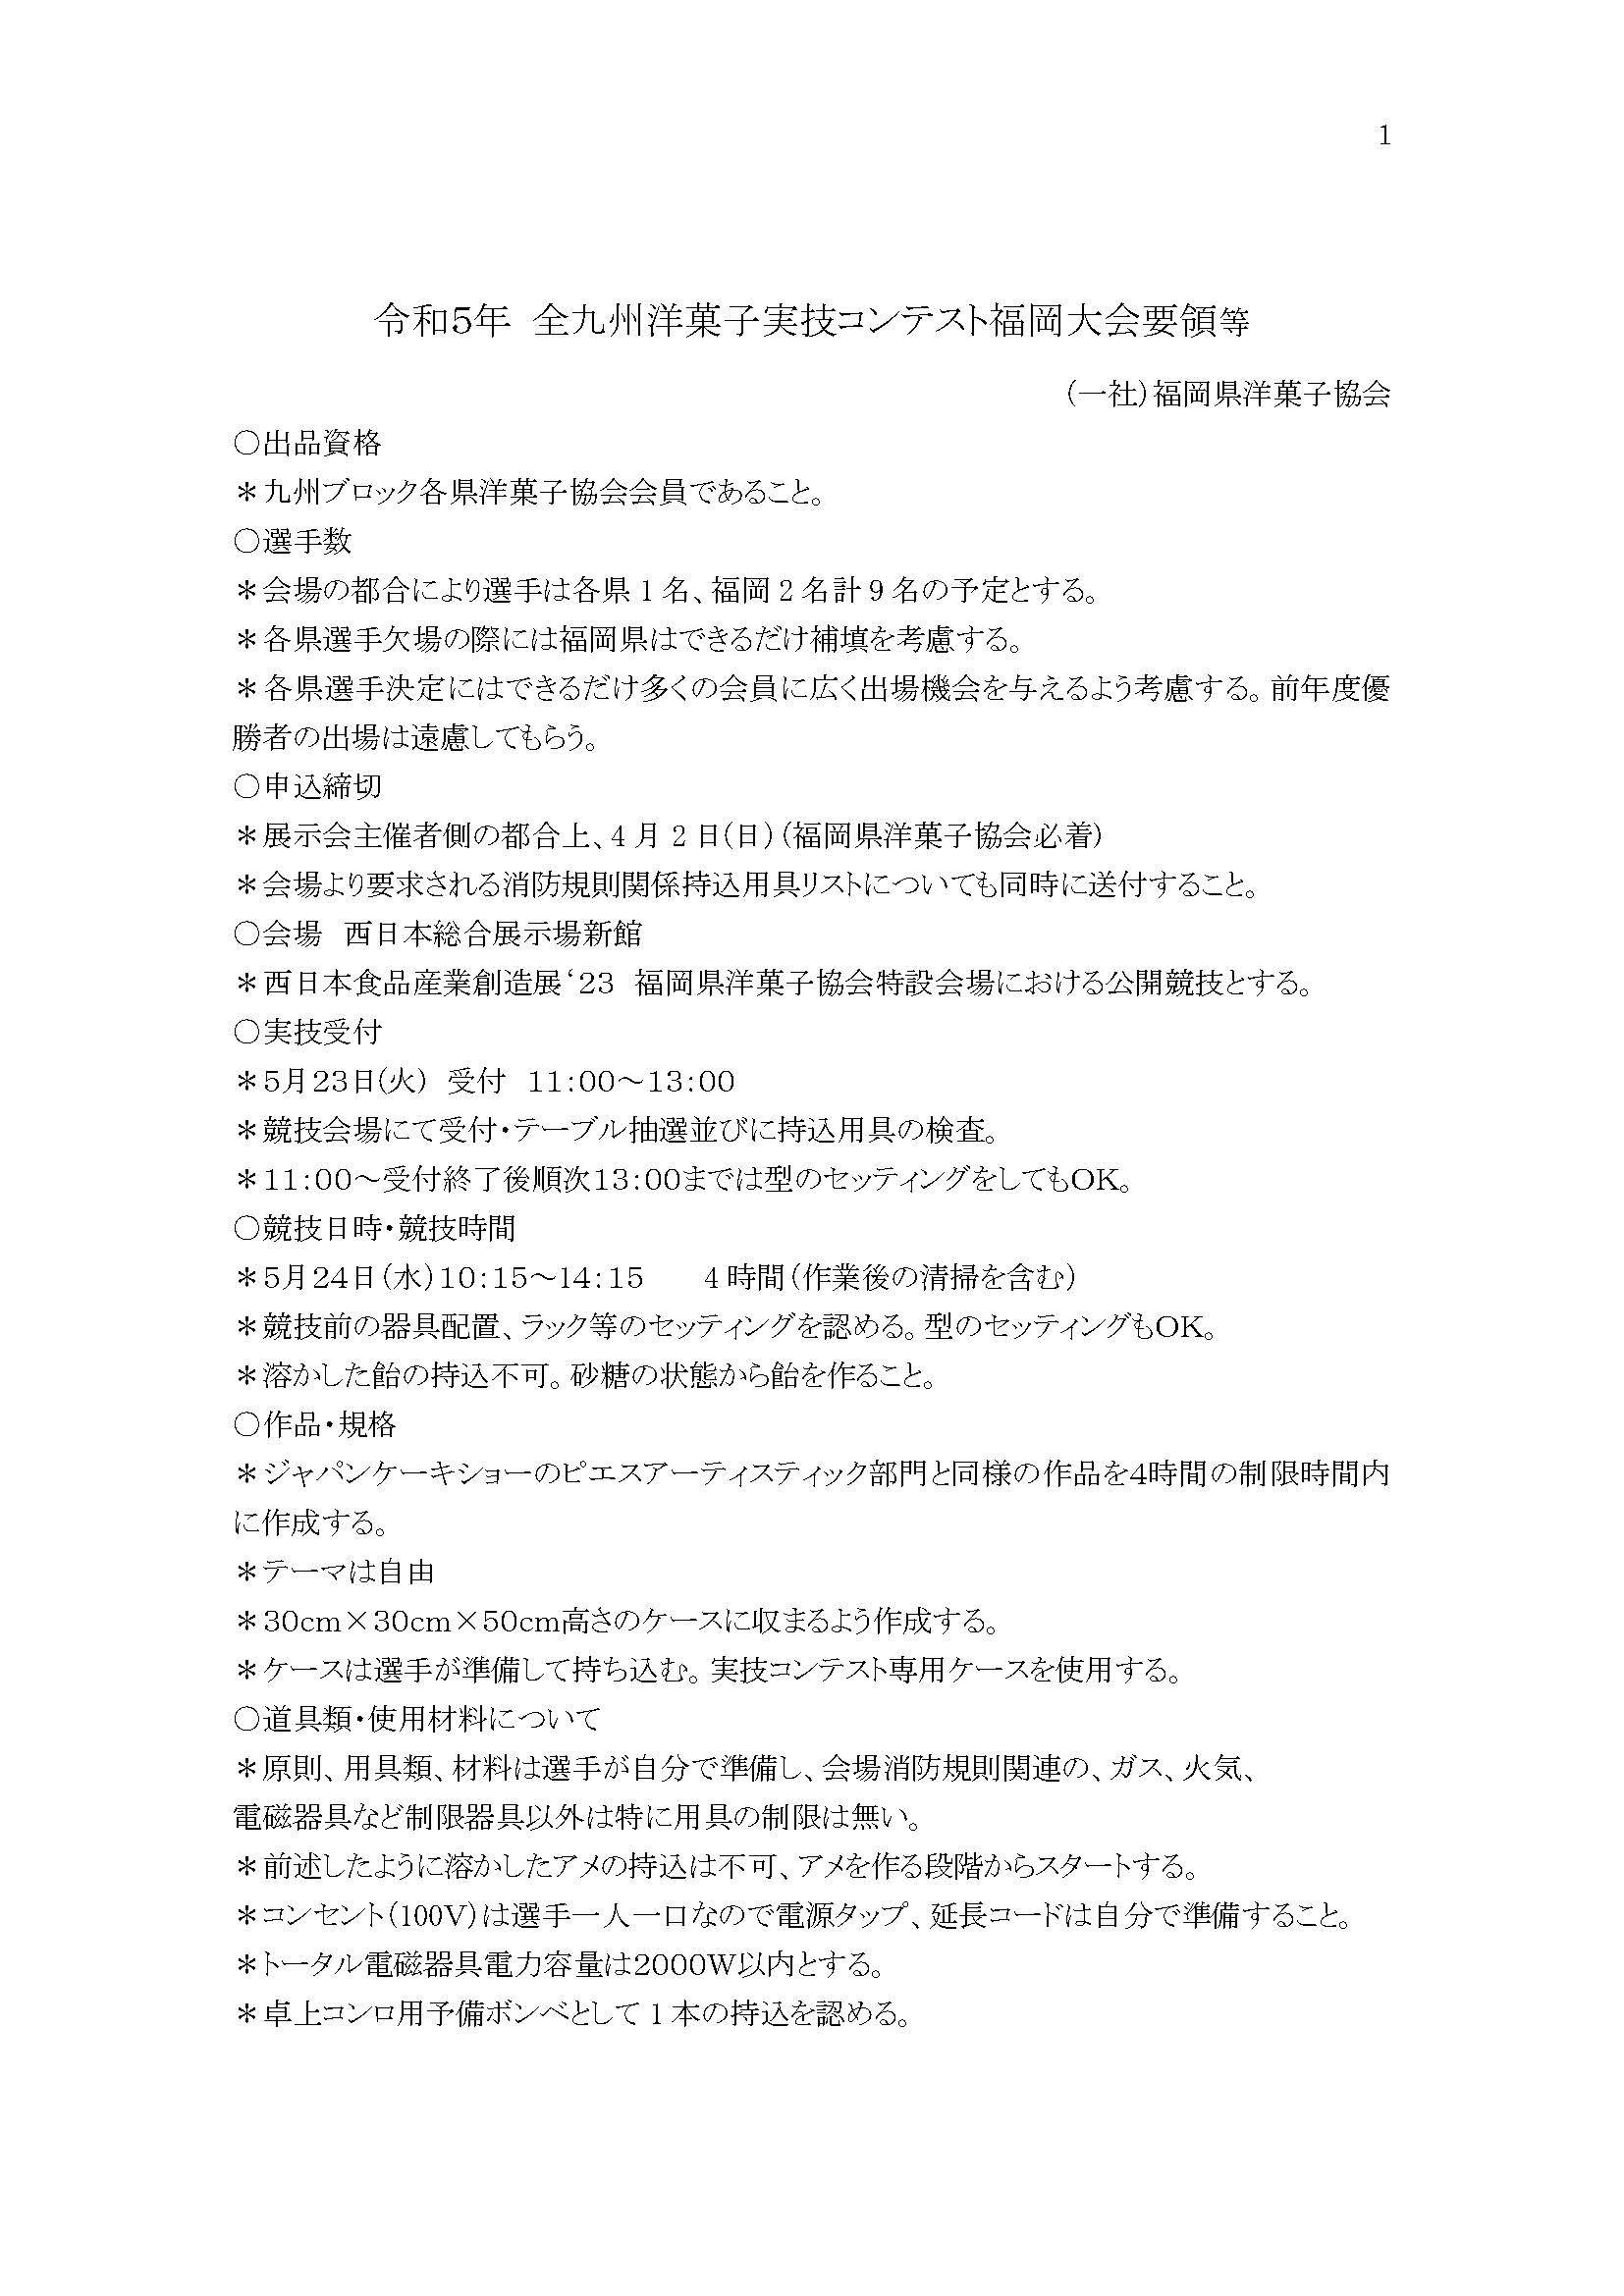 令和5年全九州洋菓子実技コンテスト福岡大会要領等 (1)_ページ_1.jpg